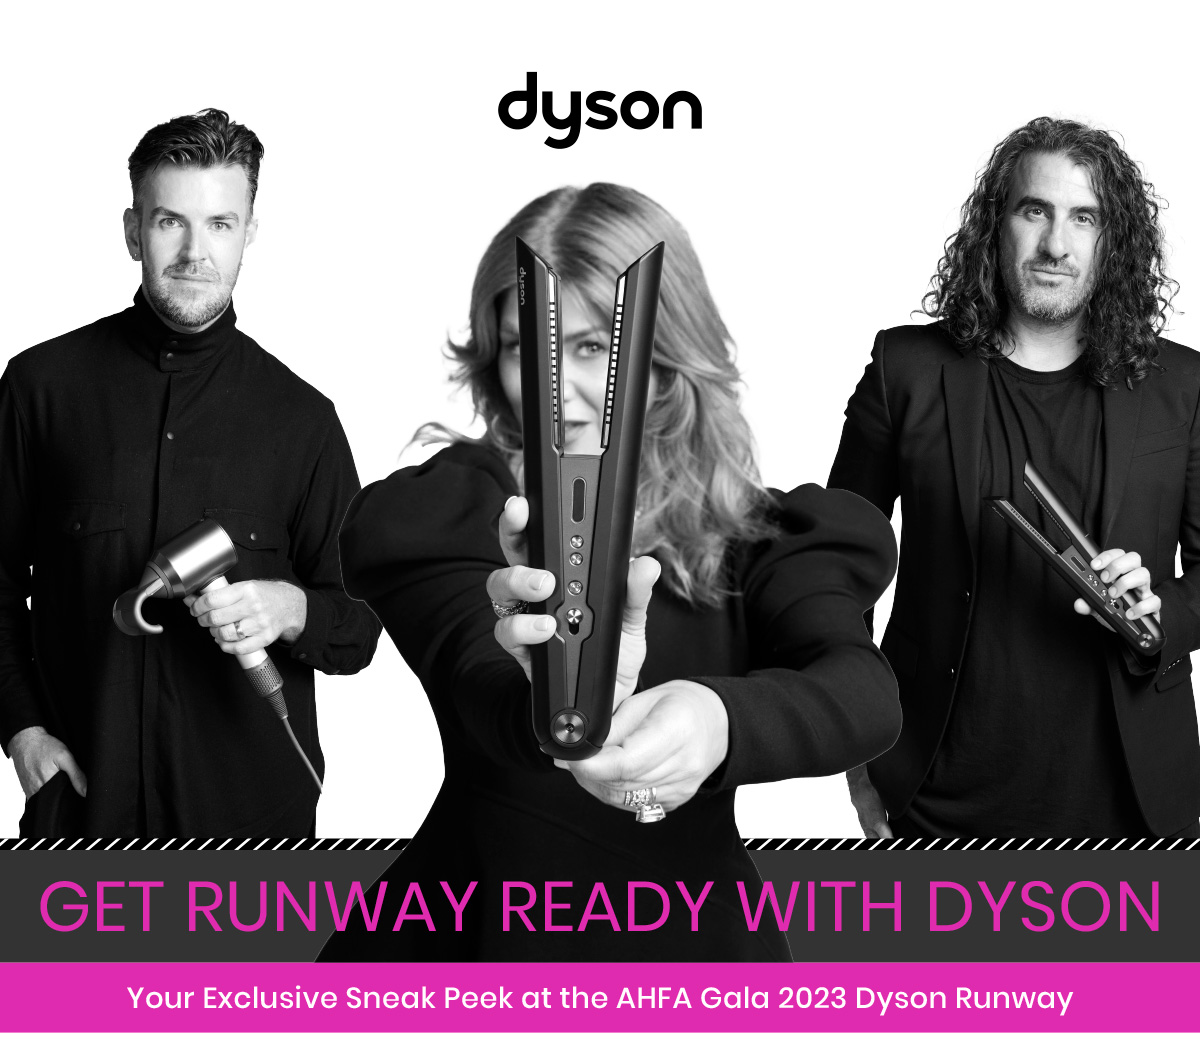 dyson-runway-ready